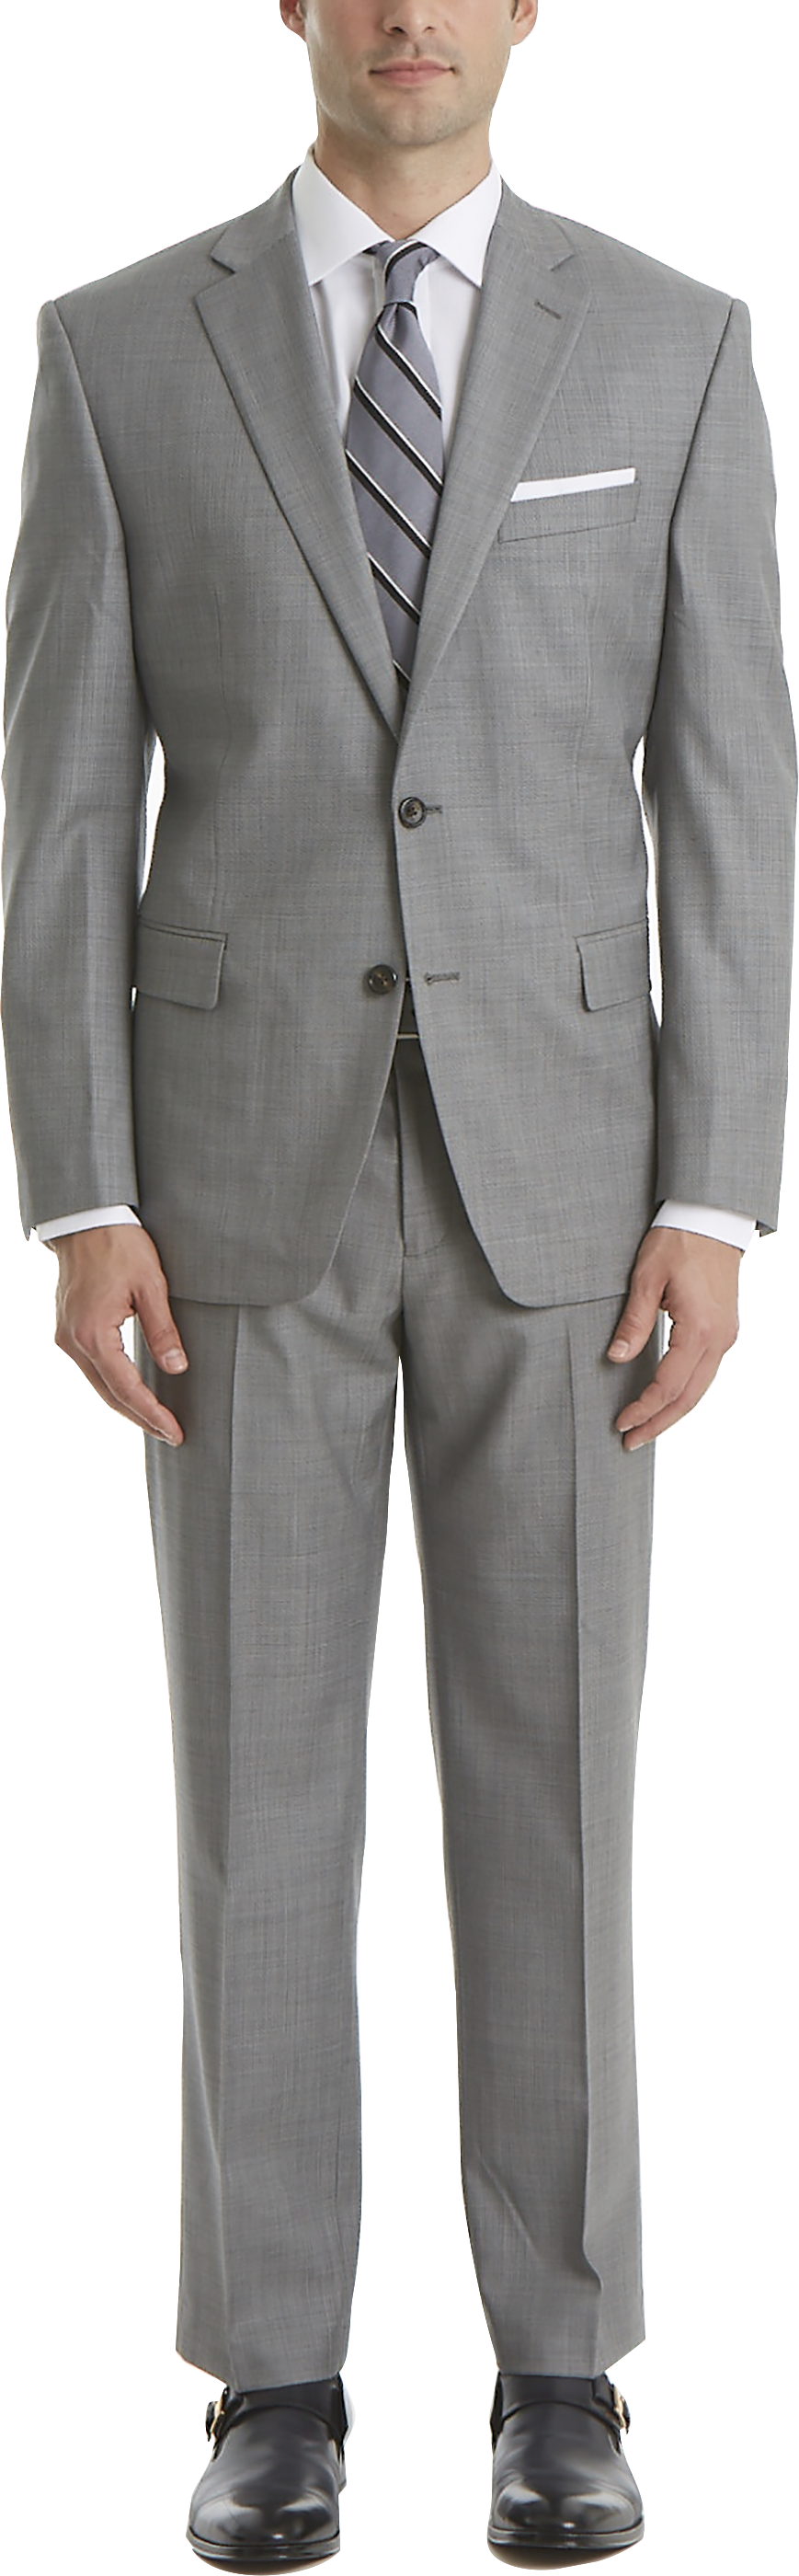 Lauren By Ralph Lauren Classic Fit Suit Separates Coat, Light Gray  Sharkskin - Men's Suits | Men's